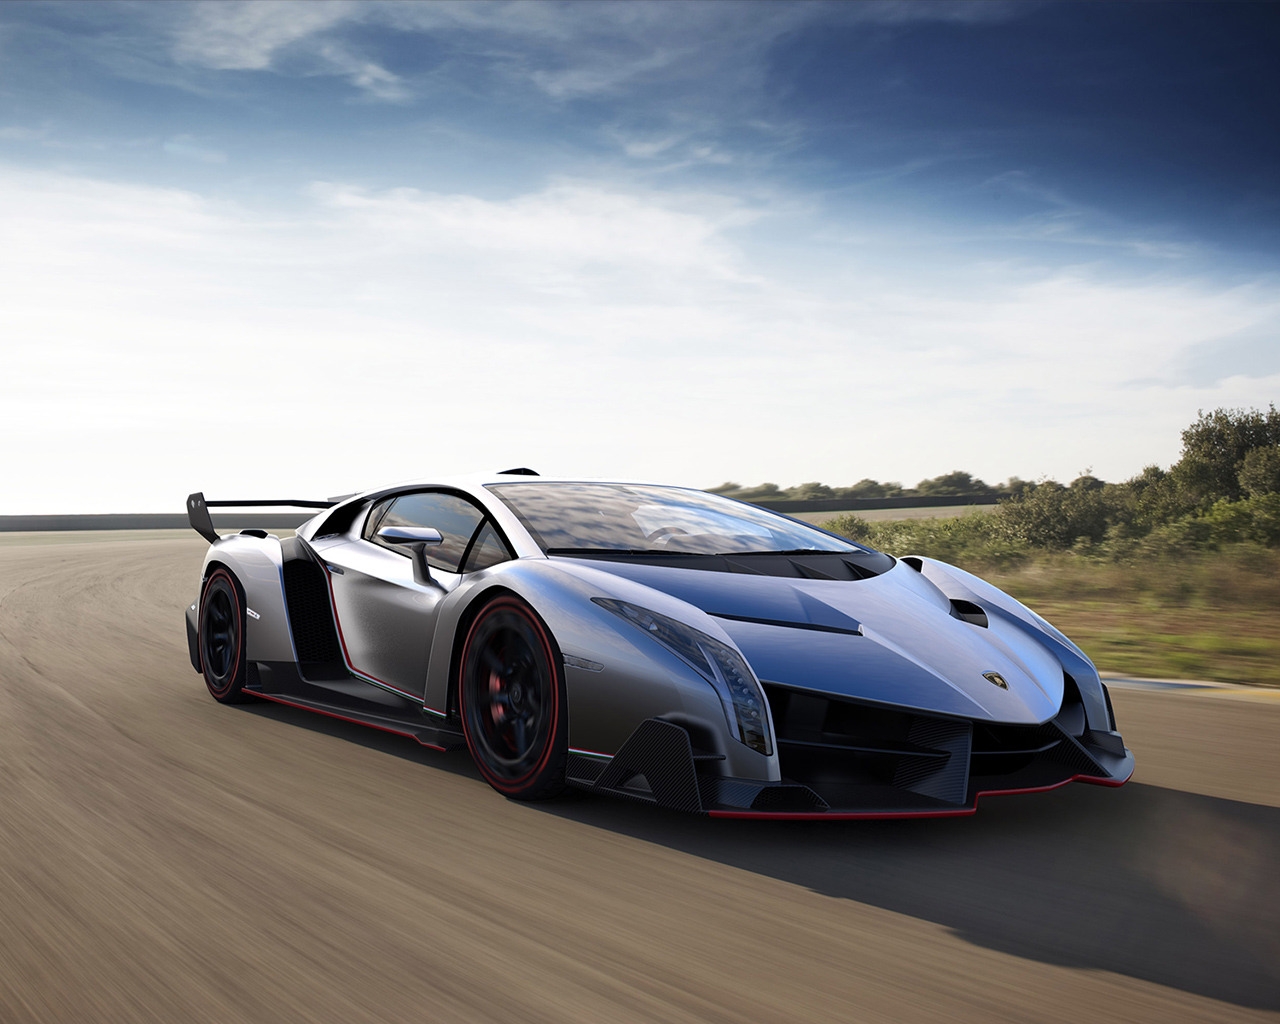 Lamborghini Veneno for 1280 x 1024 resolution